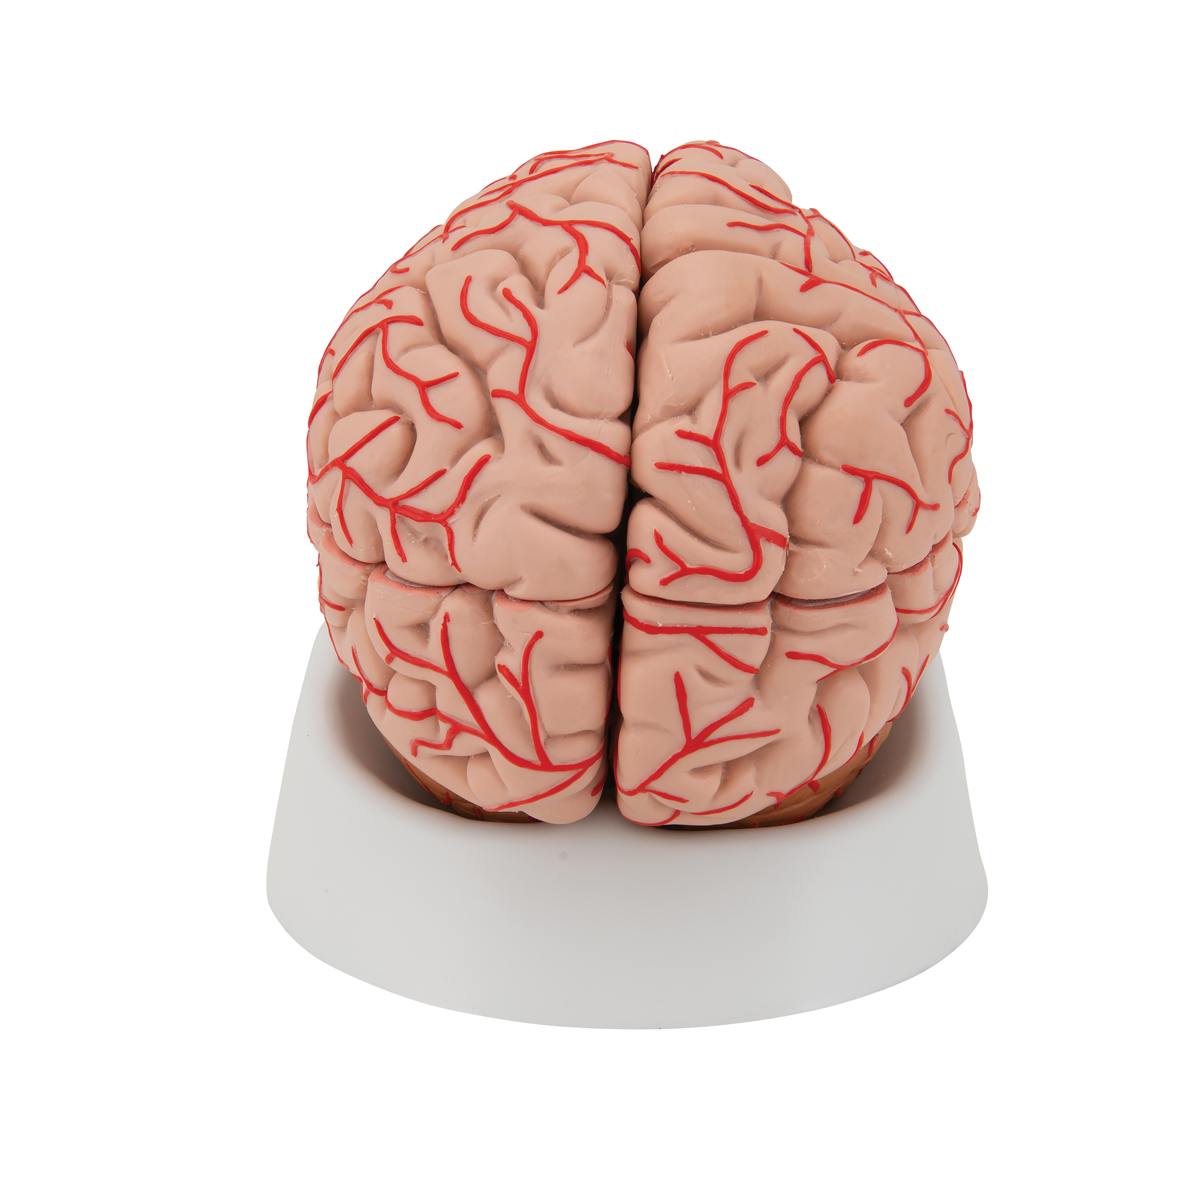 Купить мозги спб. Муляж мозга. Модель мозга. Мозг человека муляж. Муляж головного мозга человека.